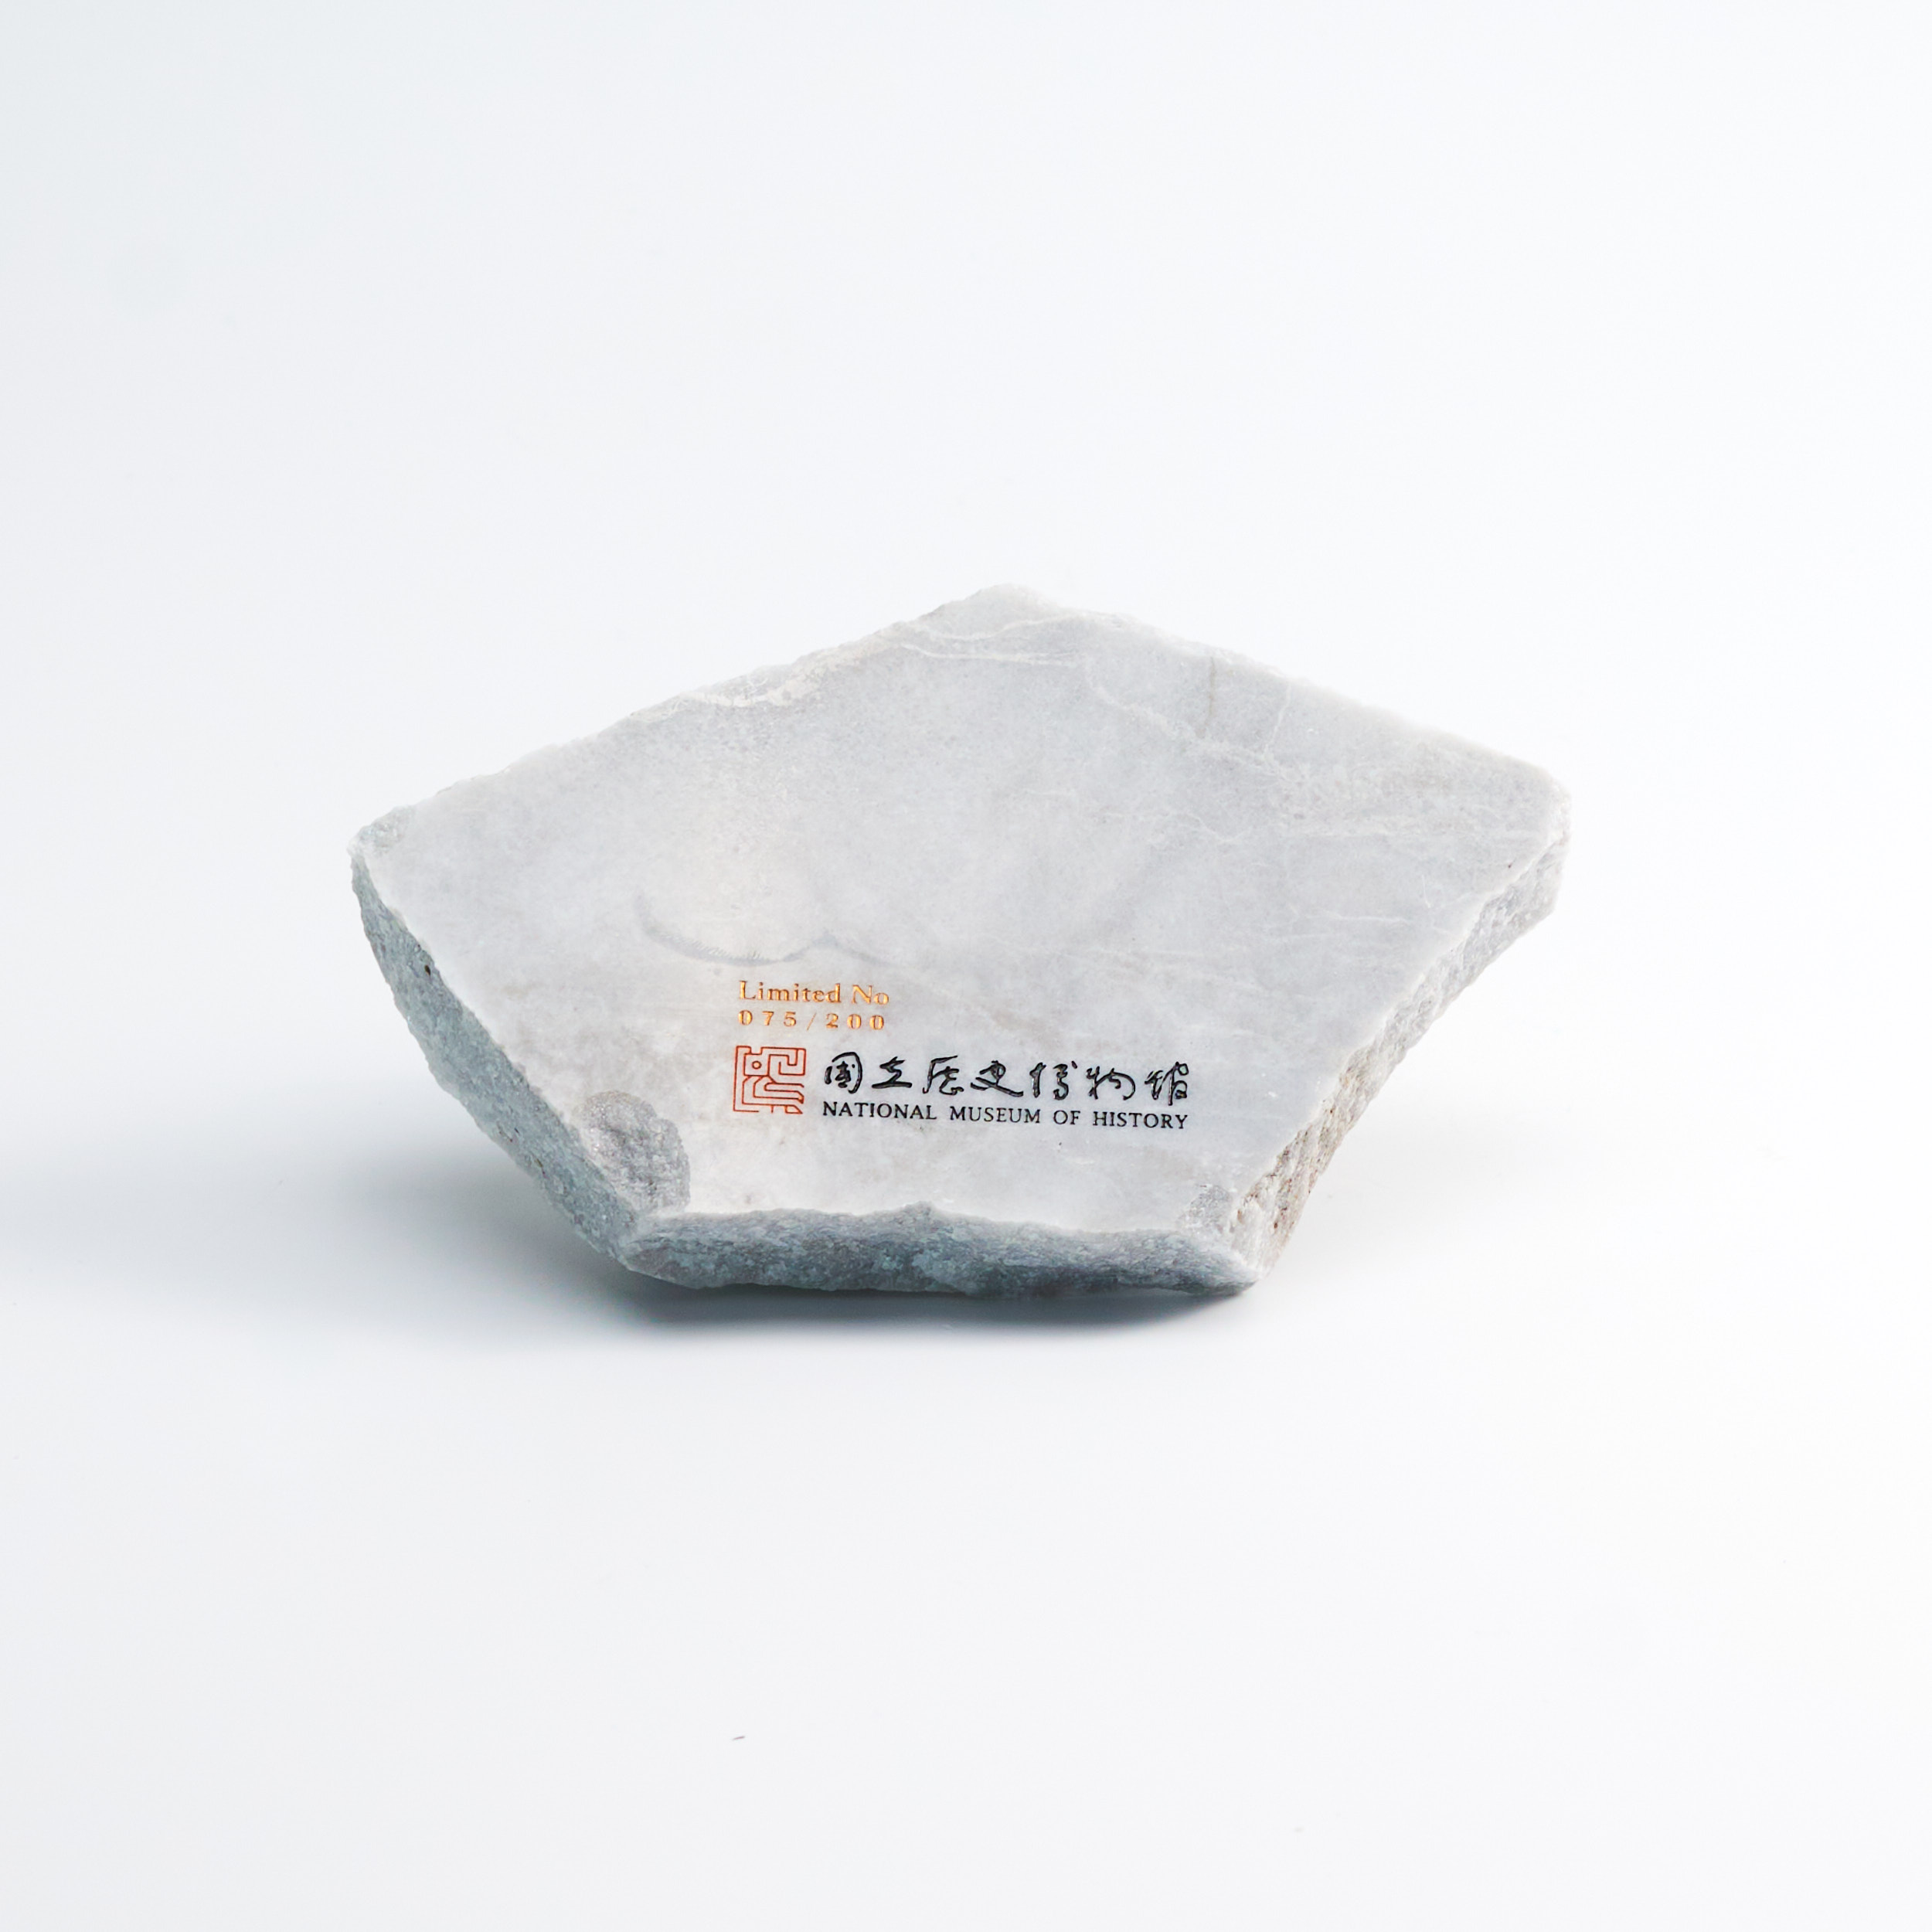 質感大理石小盤NO.075(限量收藏版) marble plate NO.075